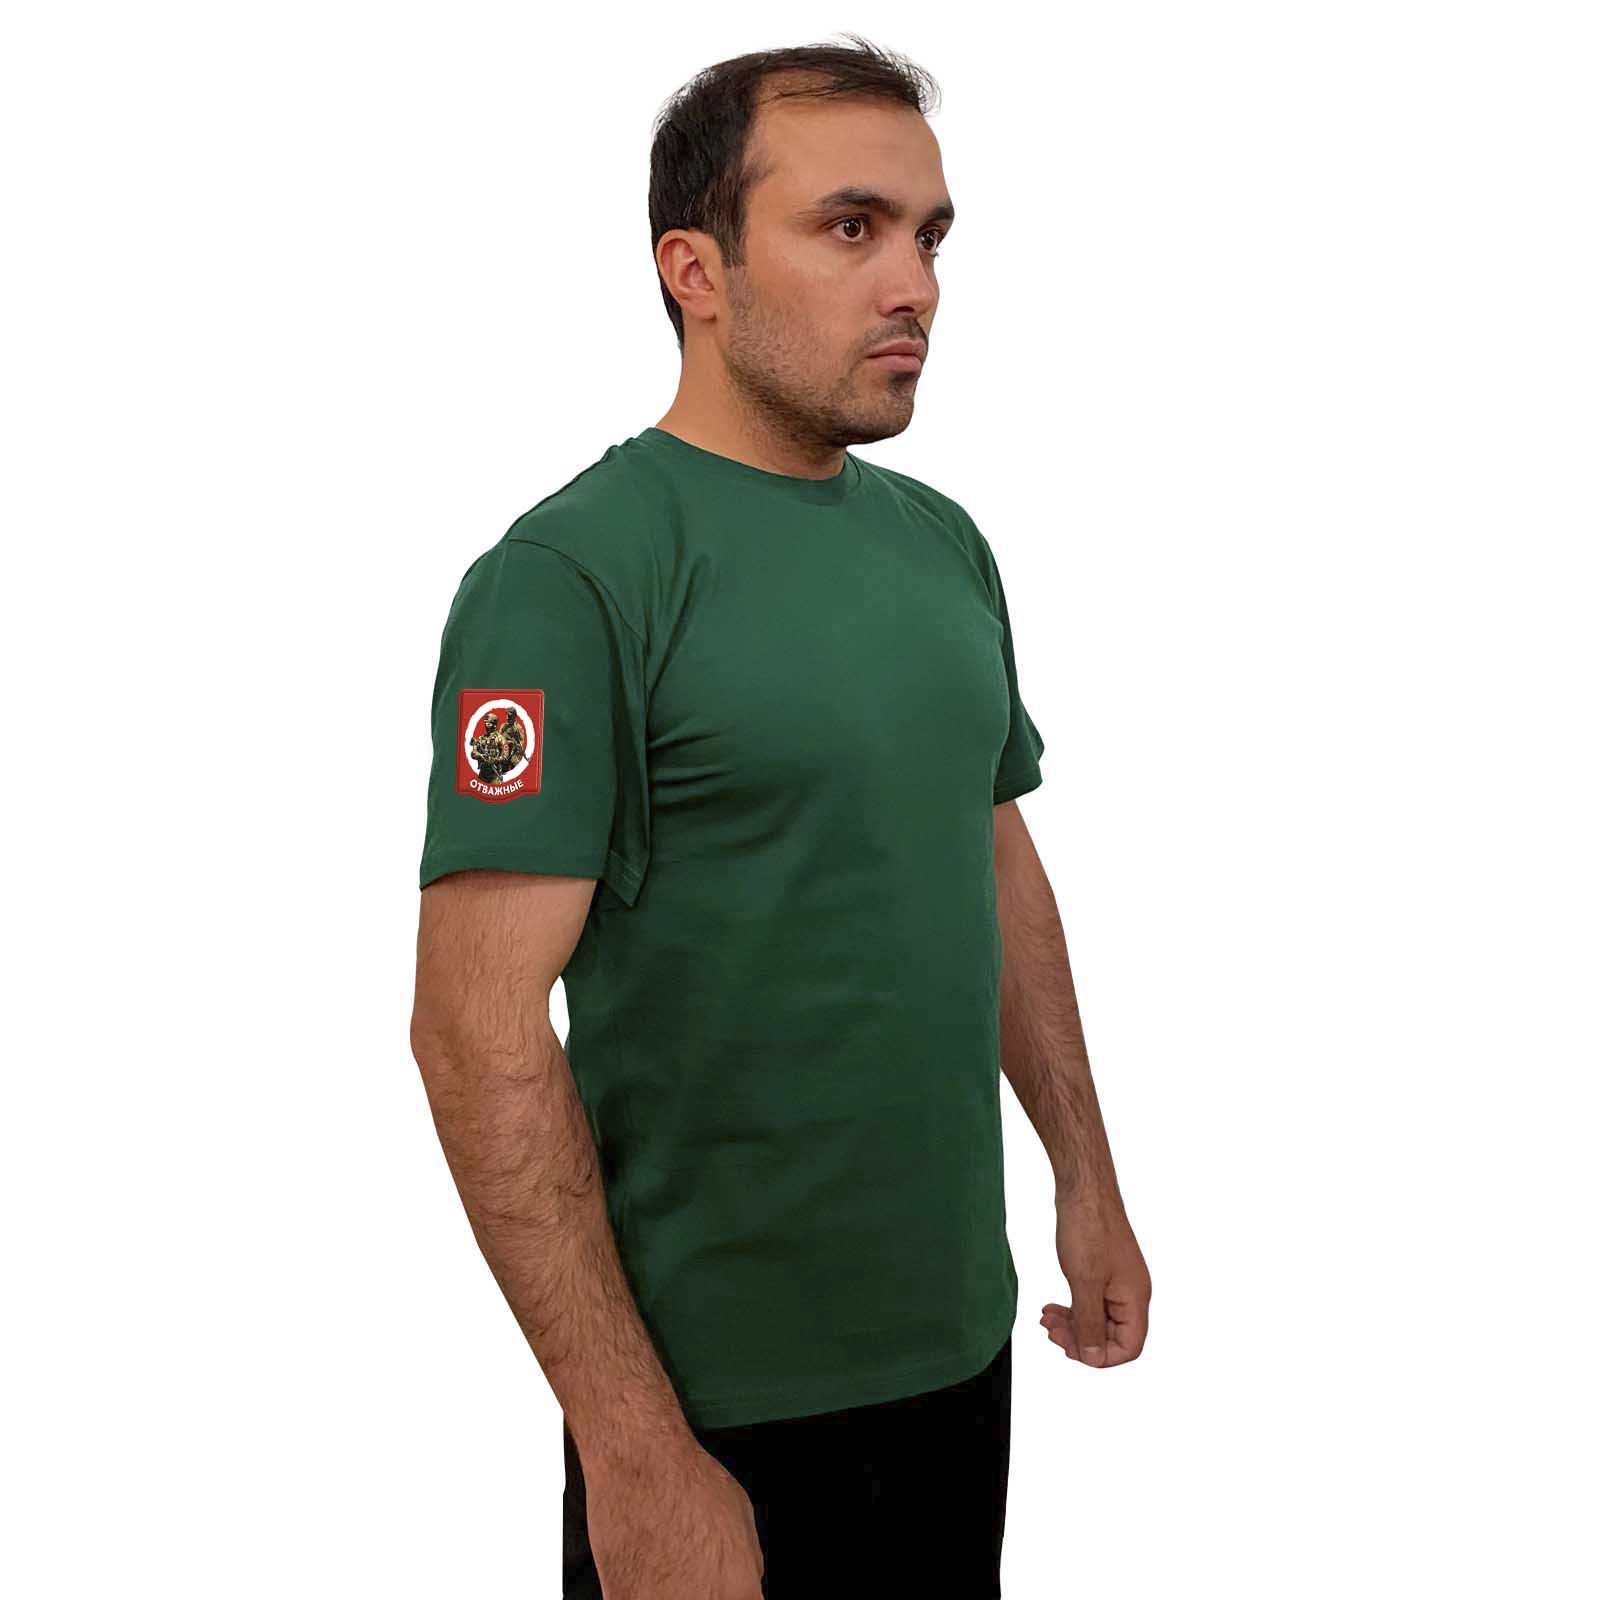  Зелёная футболка с термотрансфером "Отважные" на рукаве